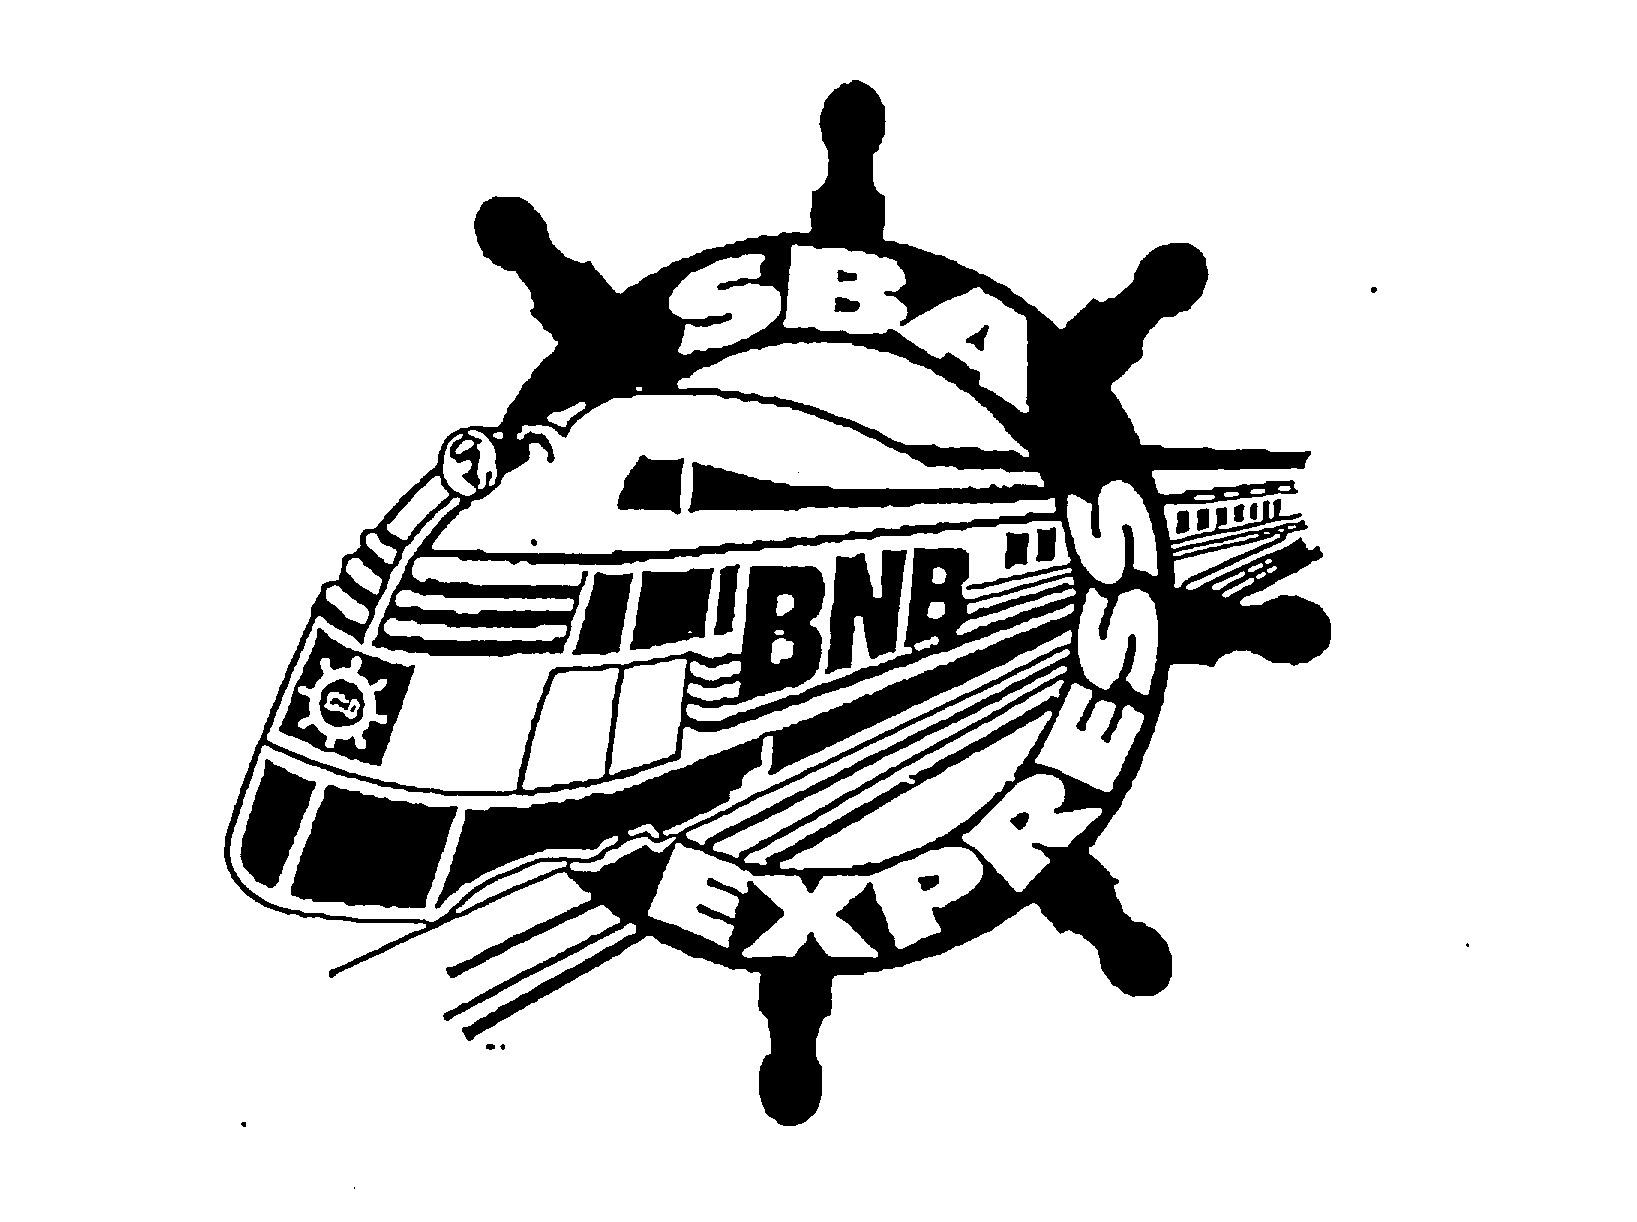  SBA EXPRESS BNB